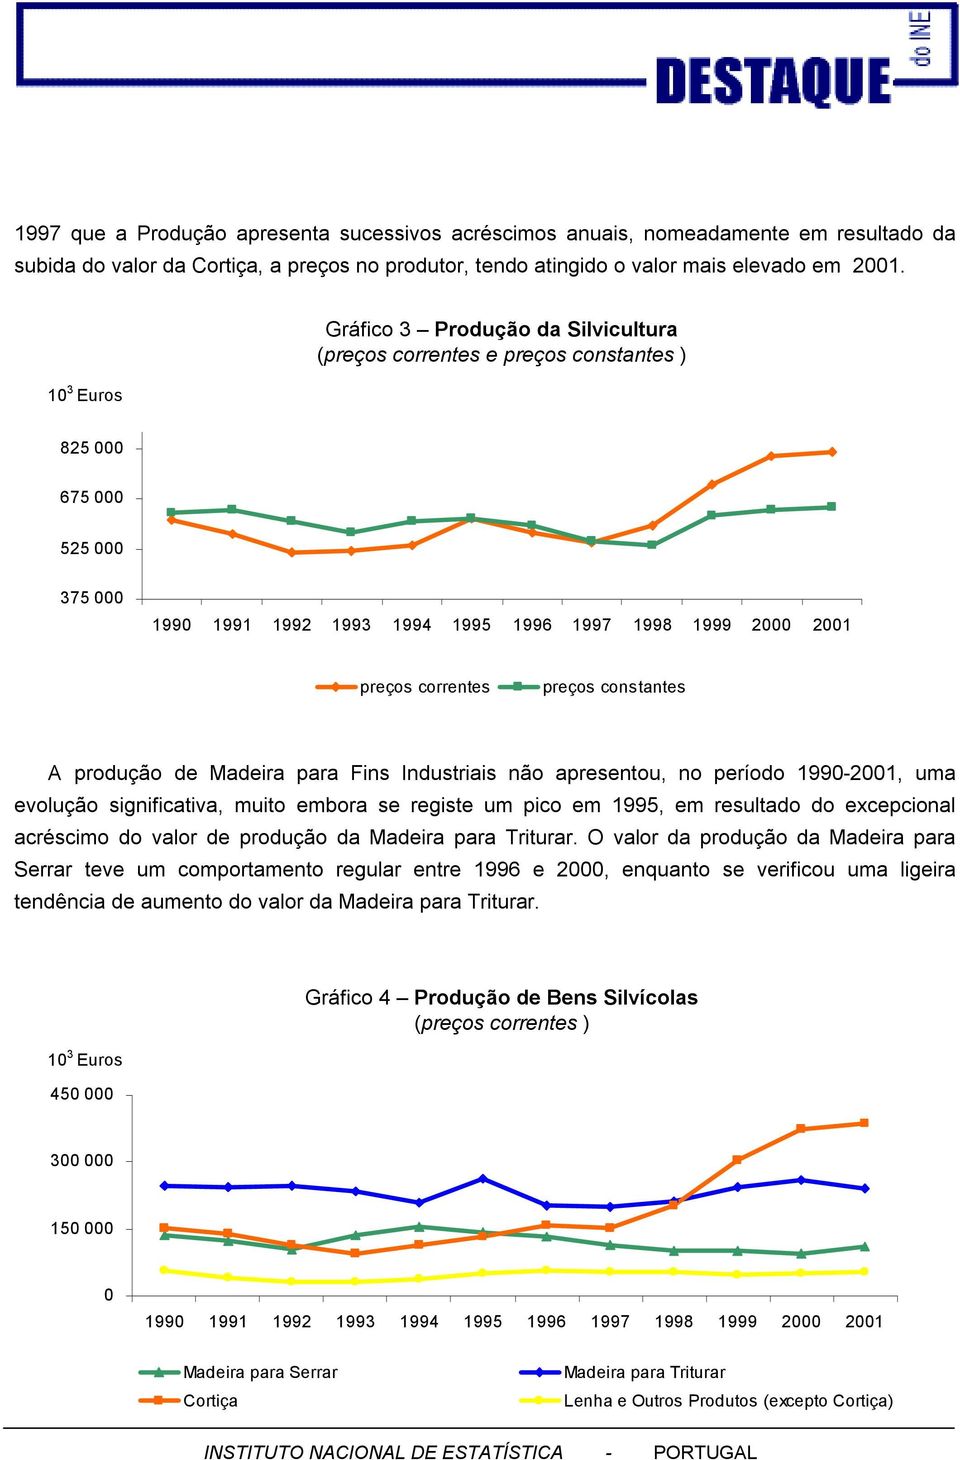 199-21, uma evolução significativa, muito embora se registe um pico em 1995, em resultado do excepcional acréscimo do valor de produção da Madeira para Triturar.